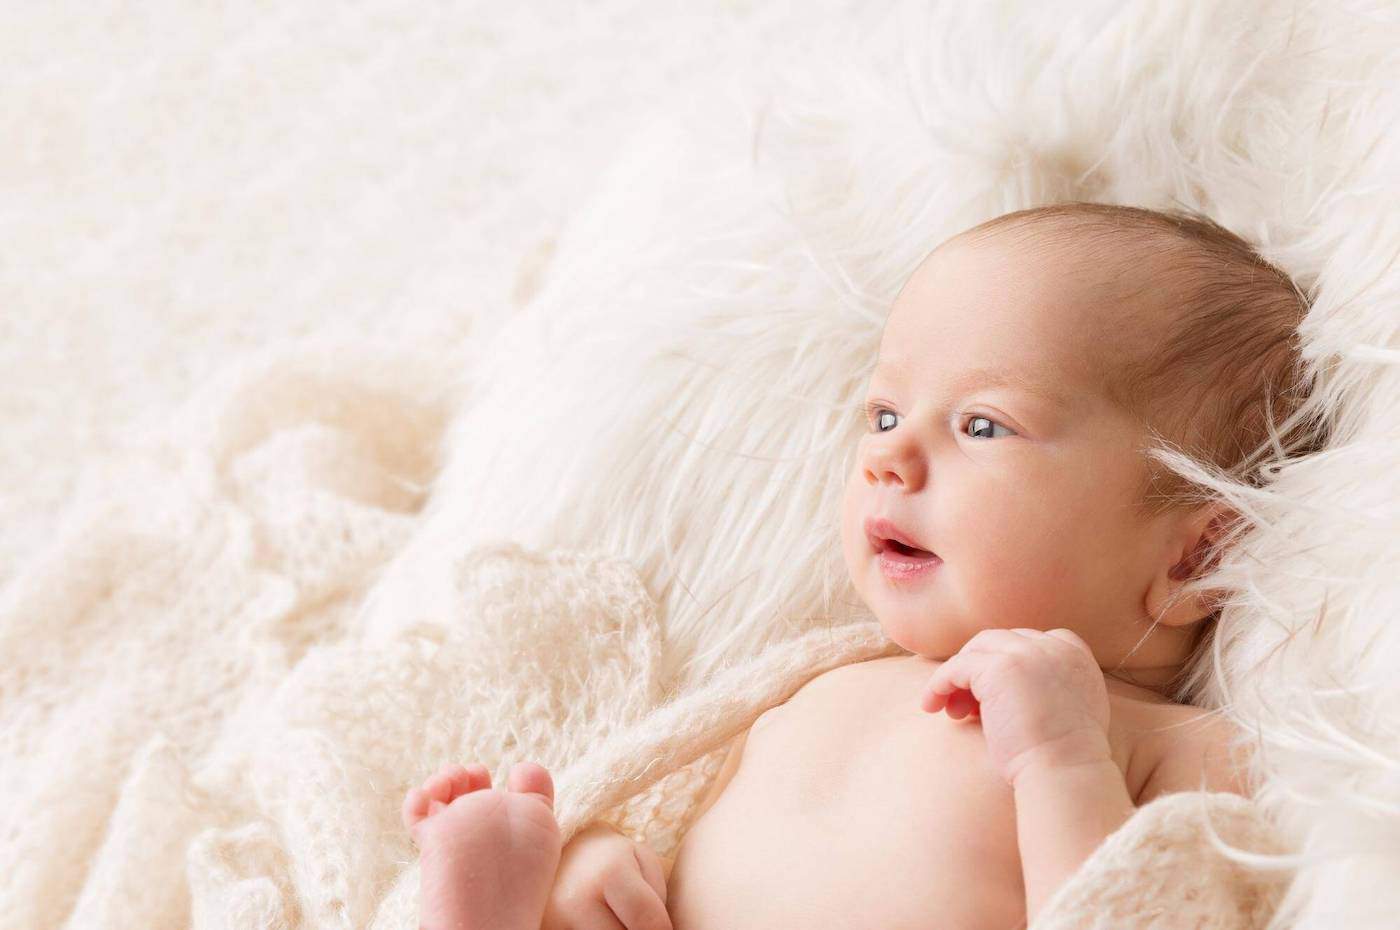 scottish newborn baby in white blankets